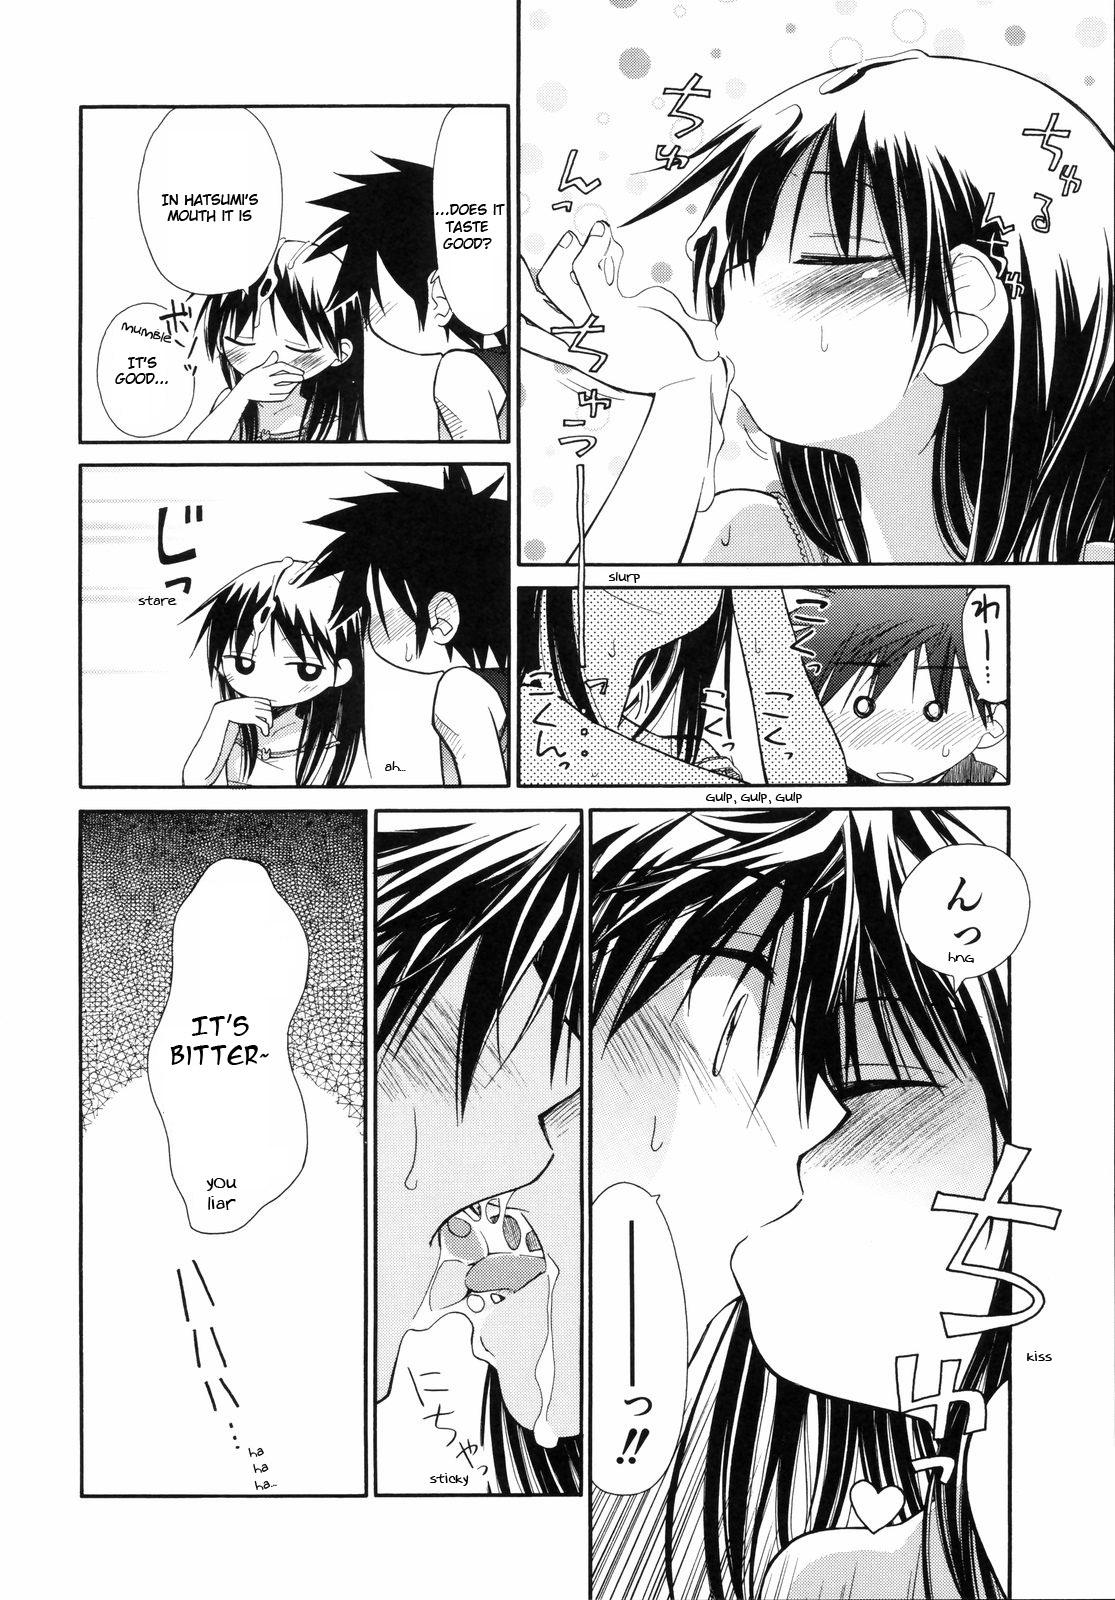 [kiR-Rin] Narcissus Chapter 3 (English) - a.k.a. Imouto / Emote Mode : Suisen no Hana no Numa no Fuchi (sensualaoi) 16